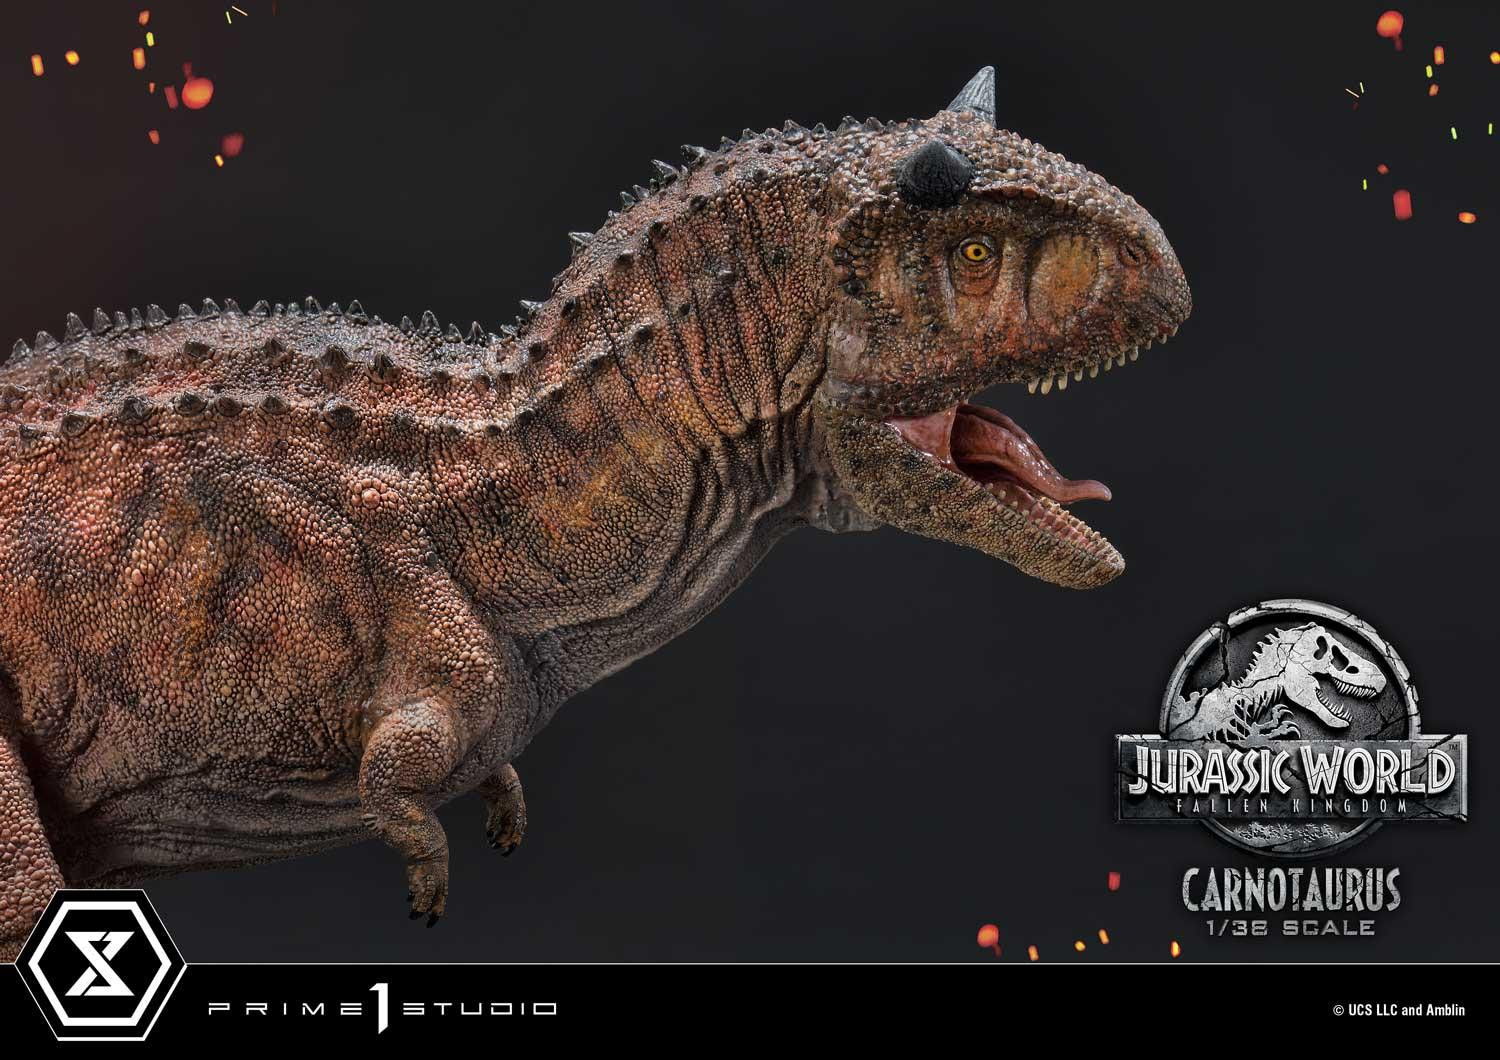 [新闻资讯] prime 1 studio:《侏罗纪世界2》食肉牛龙 1/38雕像 预售